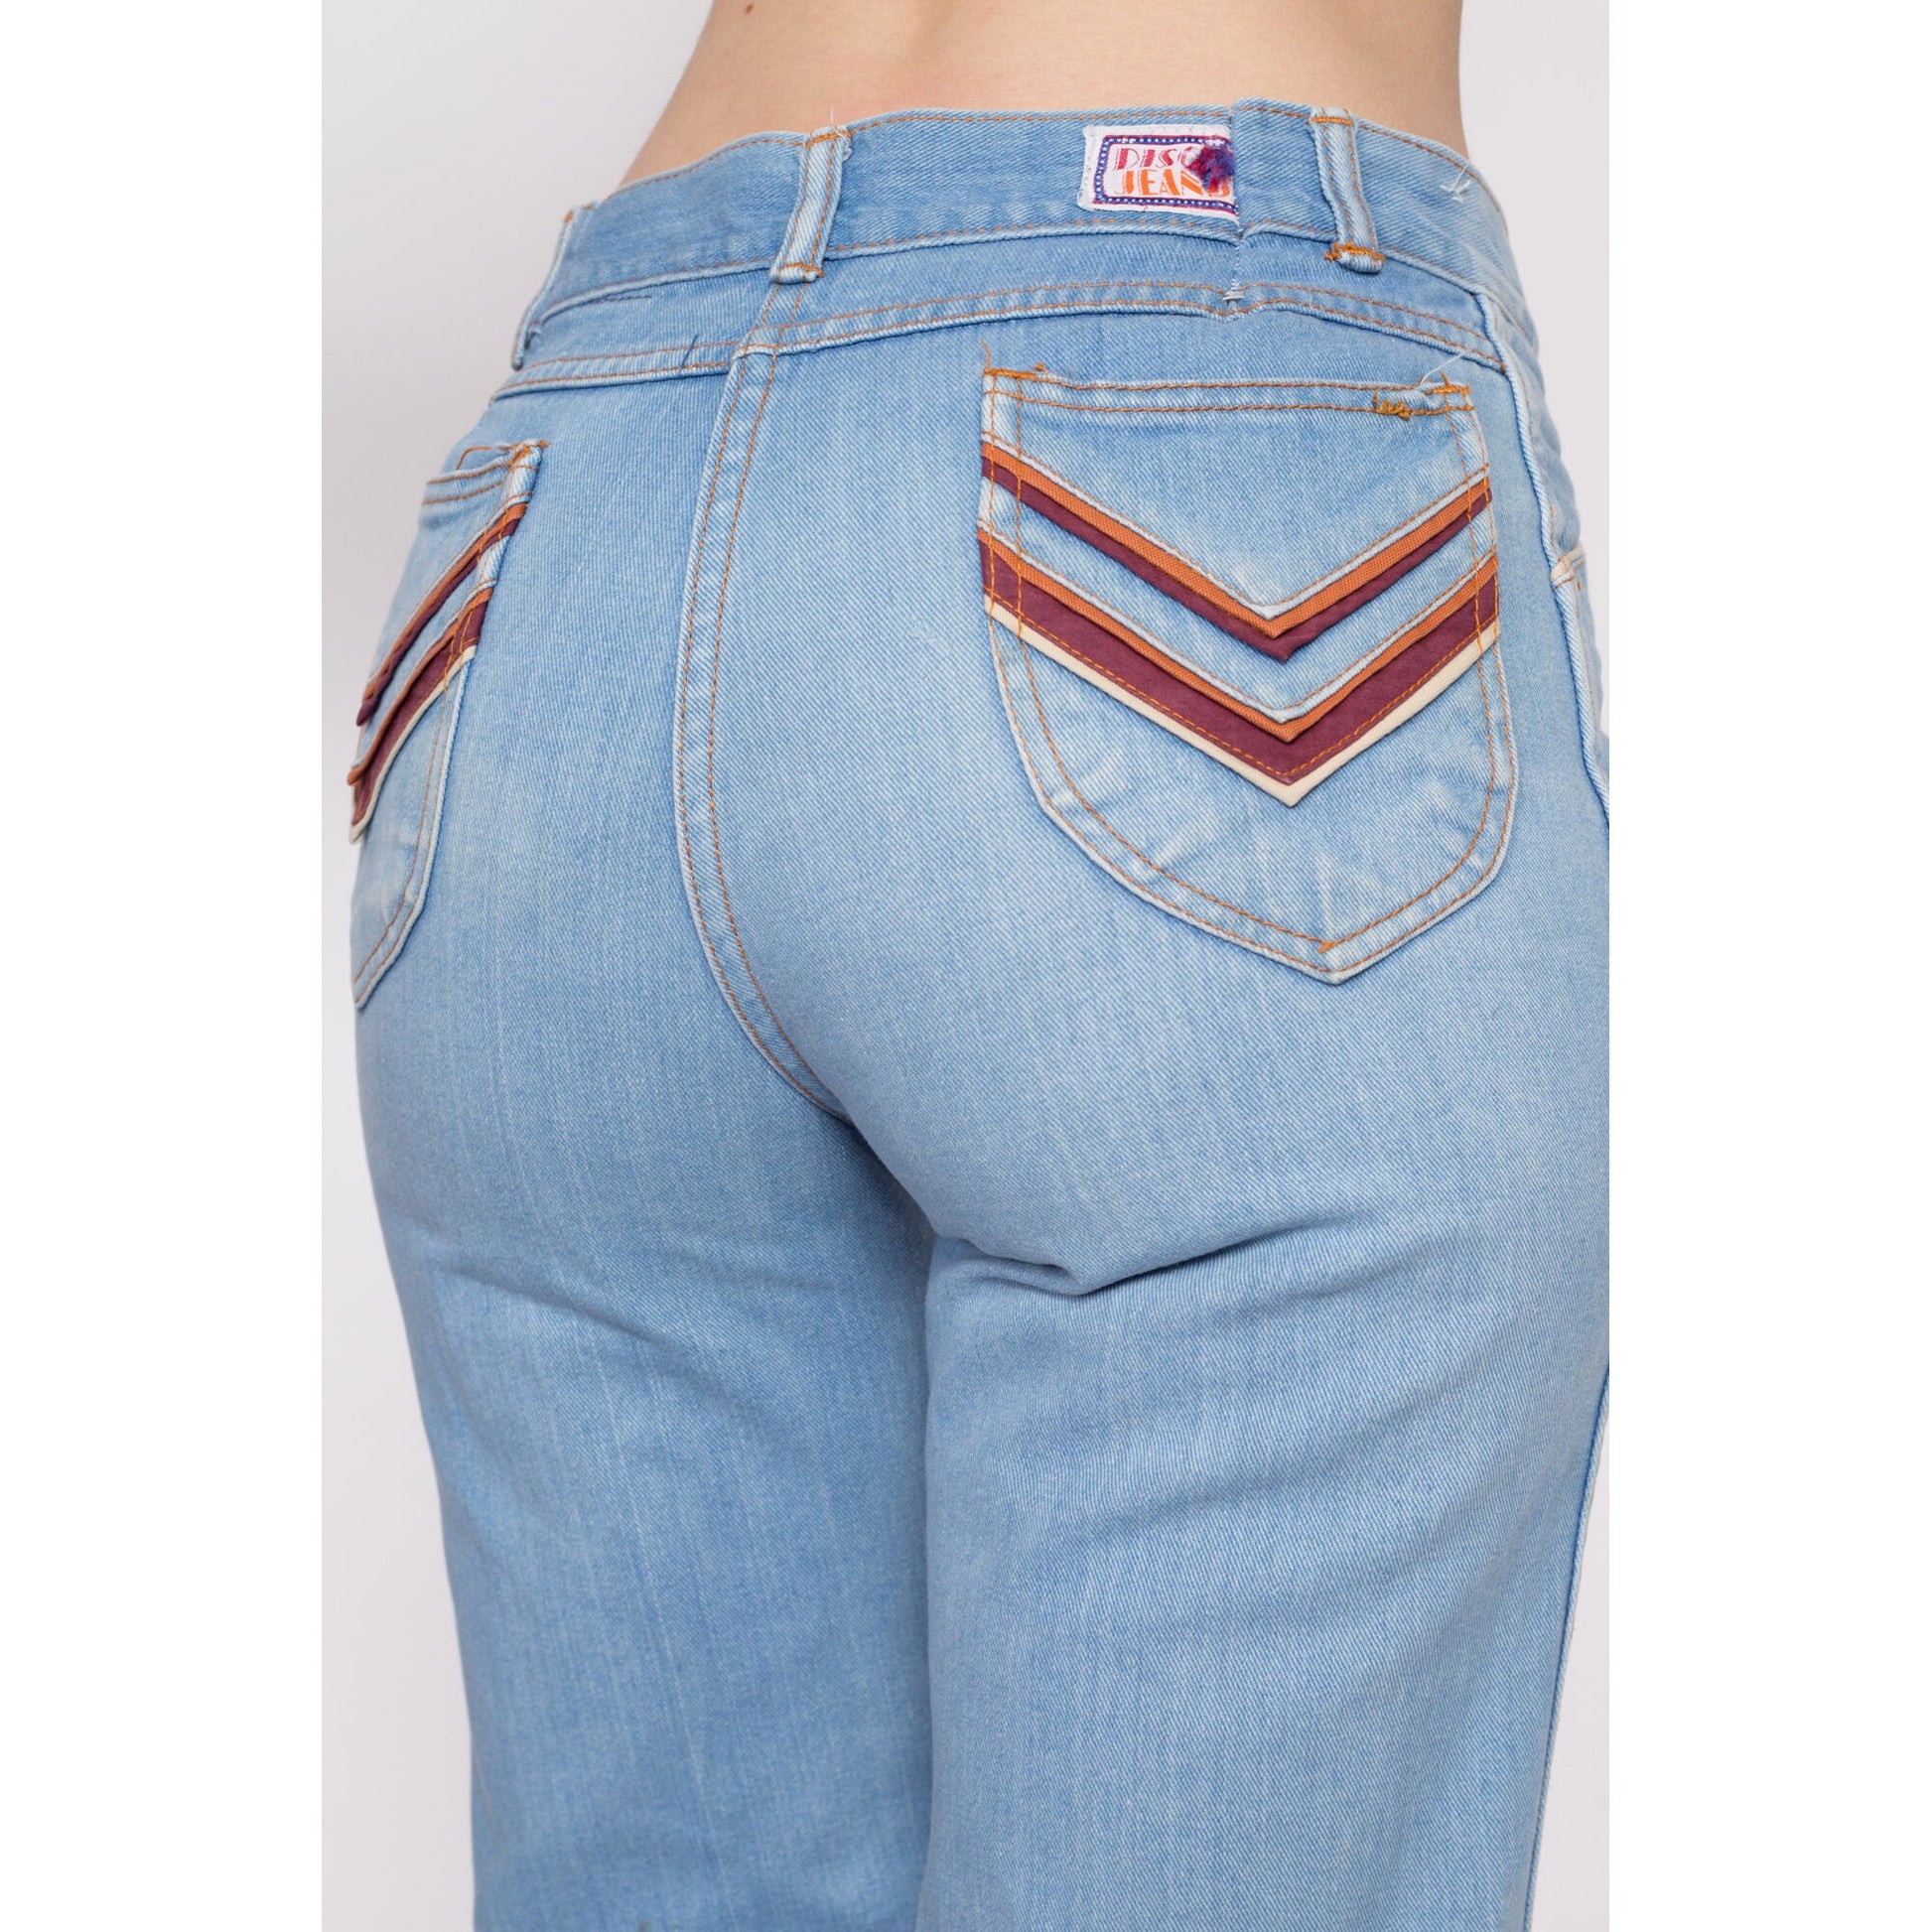 70s Bell bottom denim jeans, zipper back pockets – The Hip Zipper